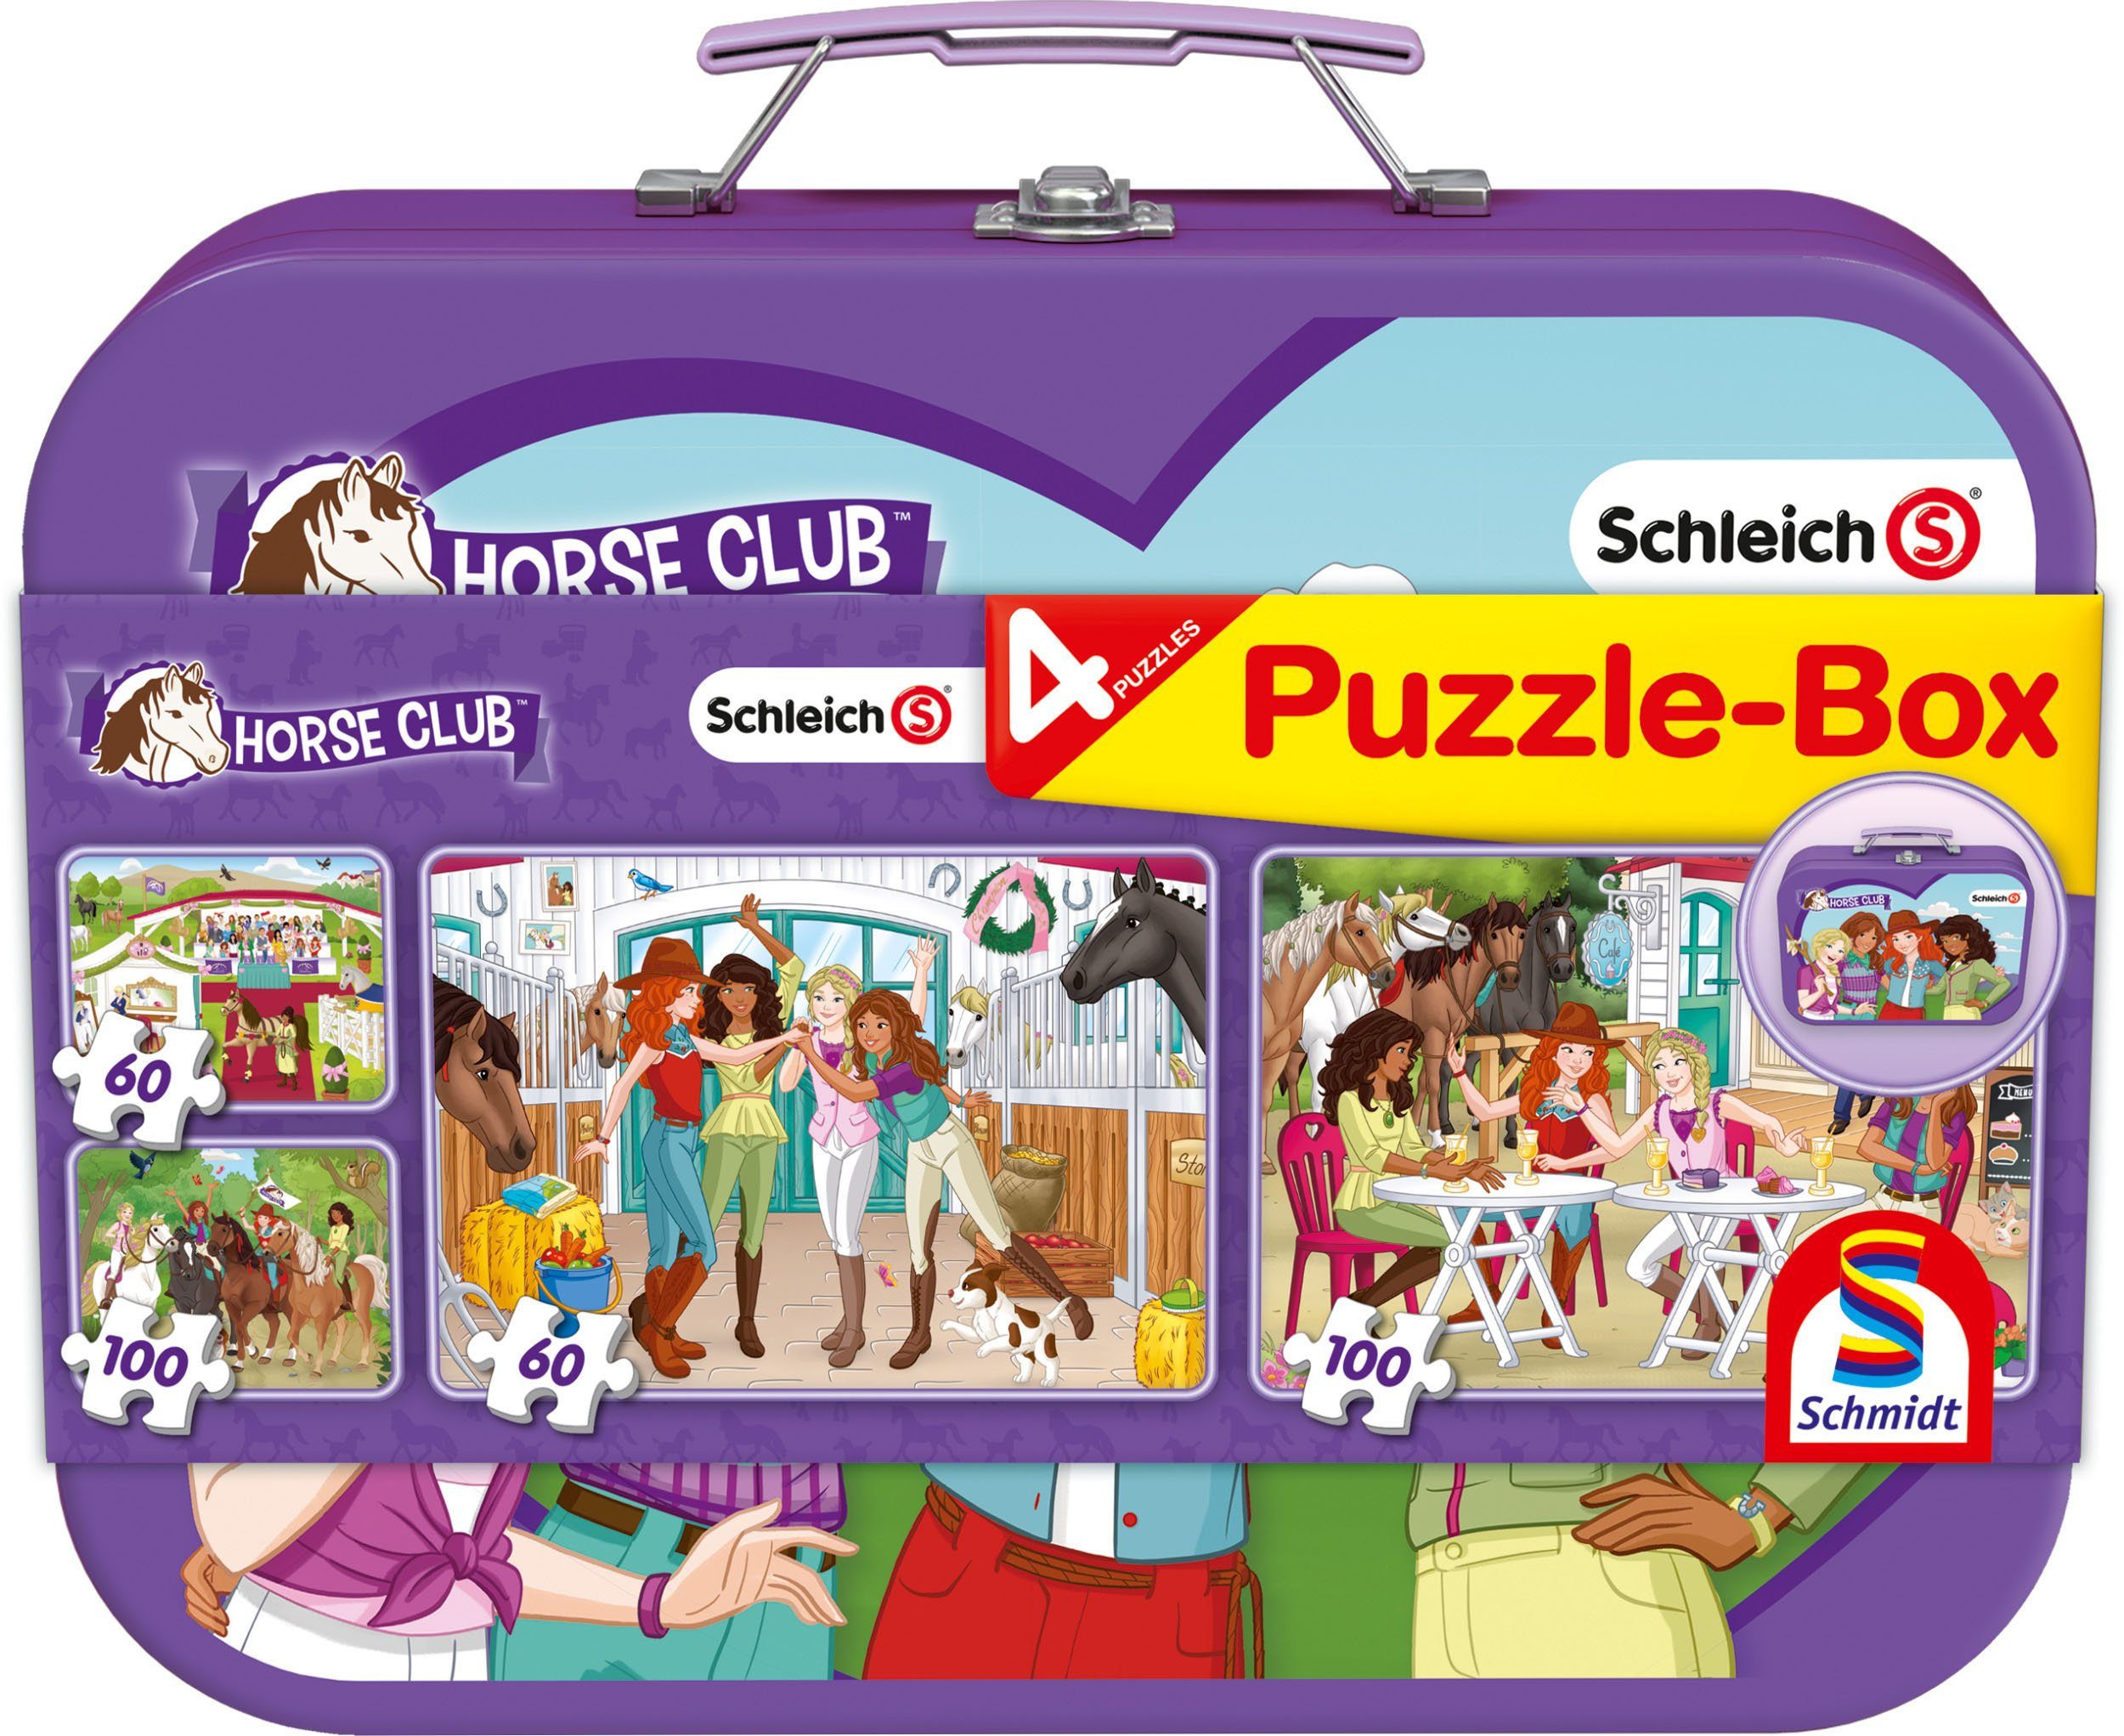 Schmidt Spiele 2x100 320 Club, Horse Teile, 2x60, Puzzle-Box, Metallkoffer Puzzle im Schleich, Puzzleteile